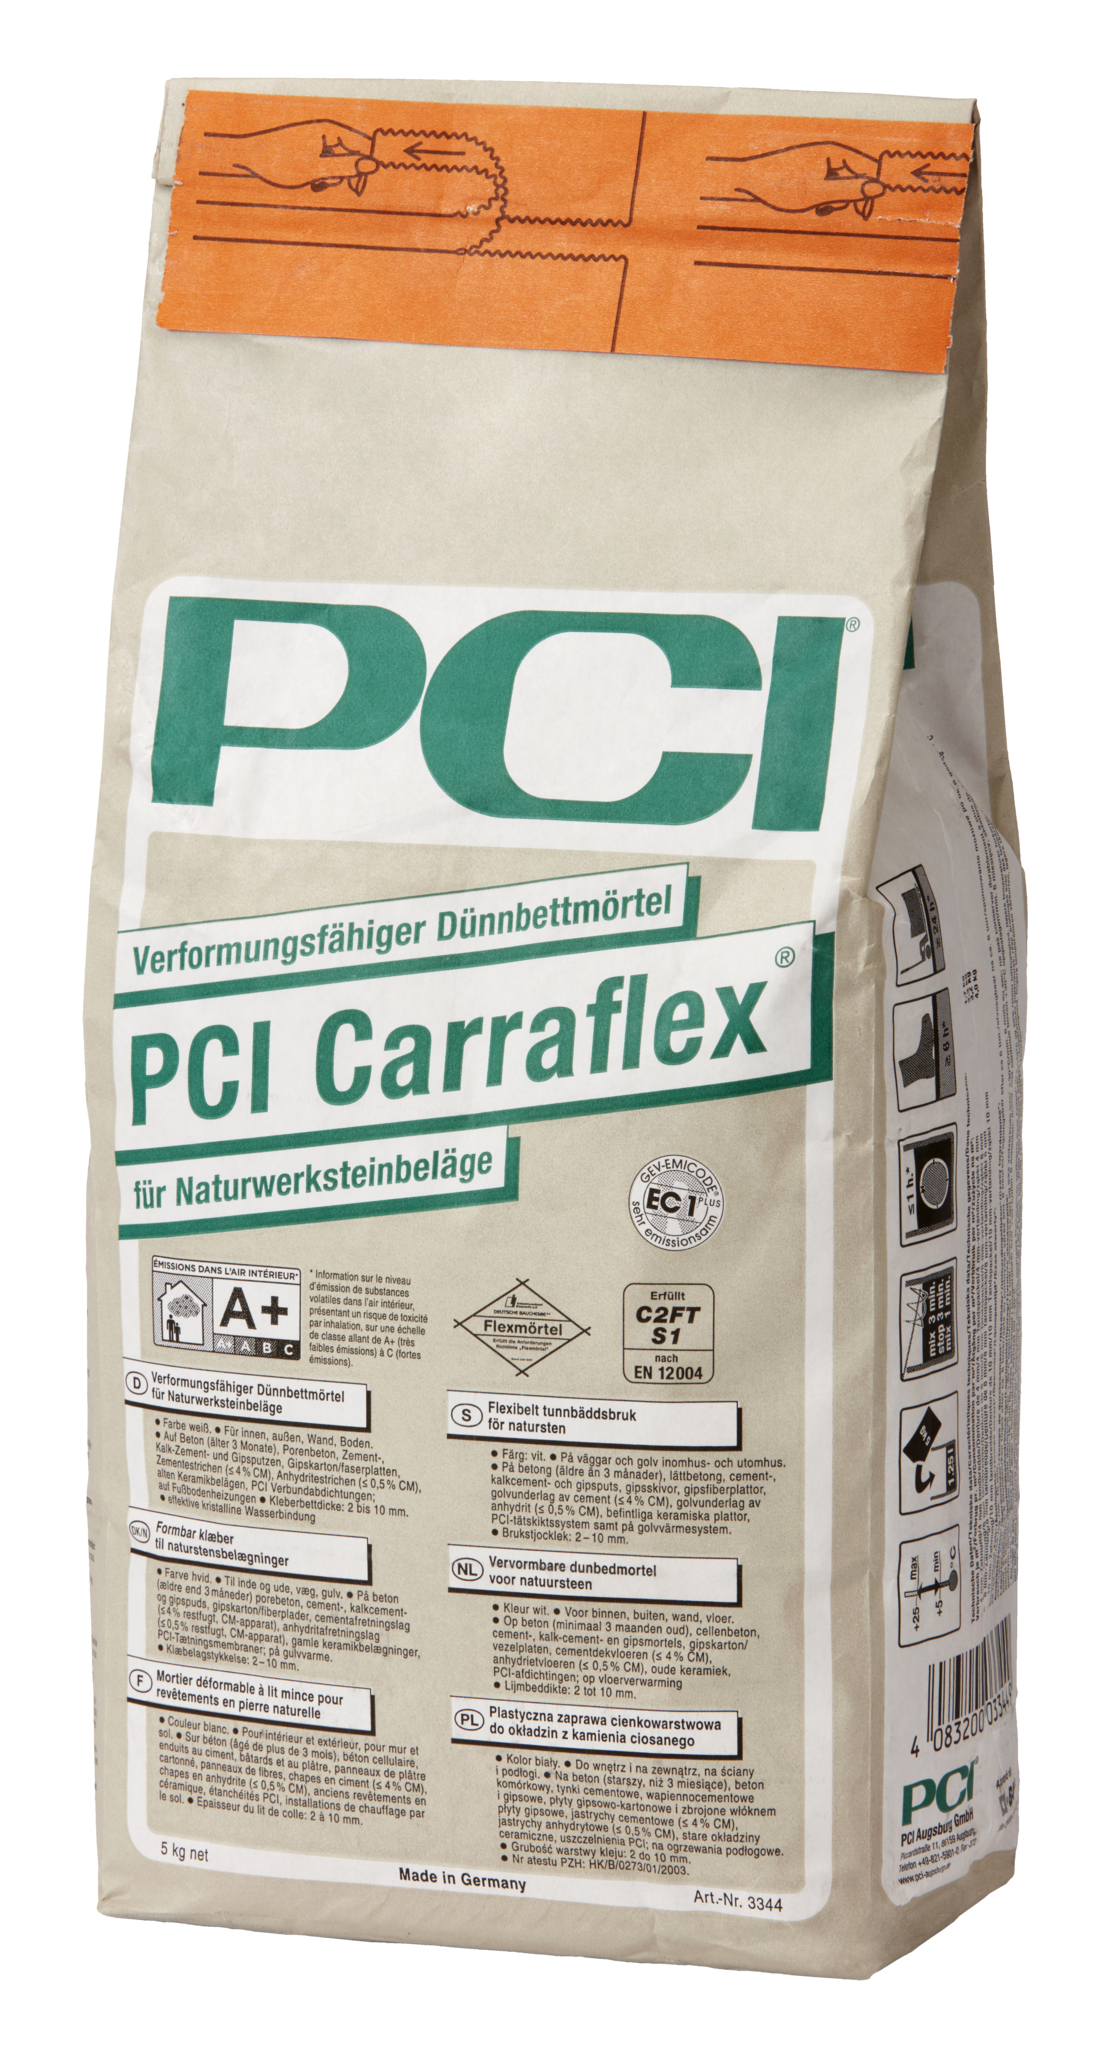 ZL OST PCI Carraflex Dünnbettmörtel 5kg verformungsfähig